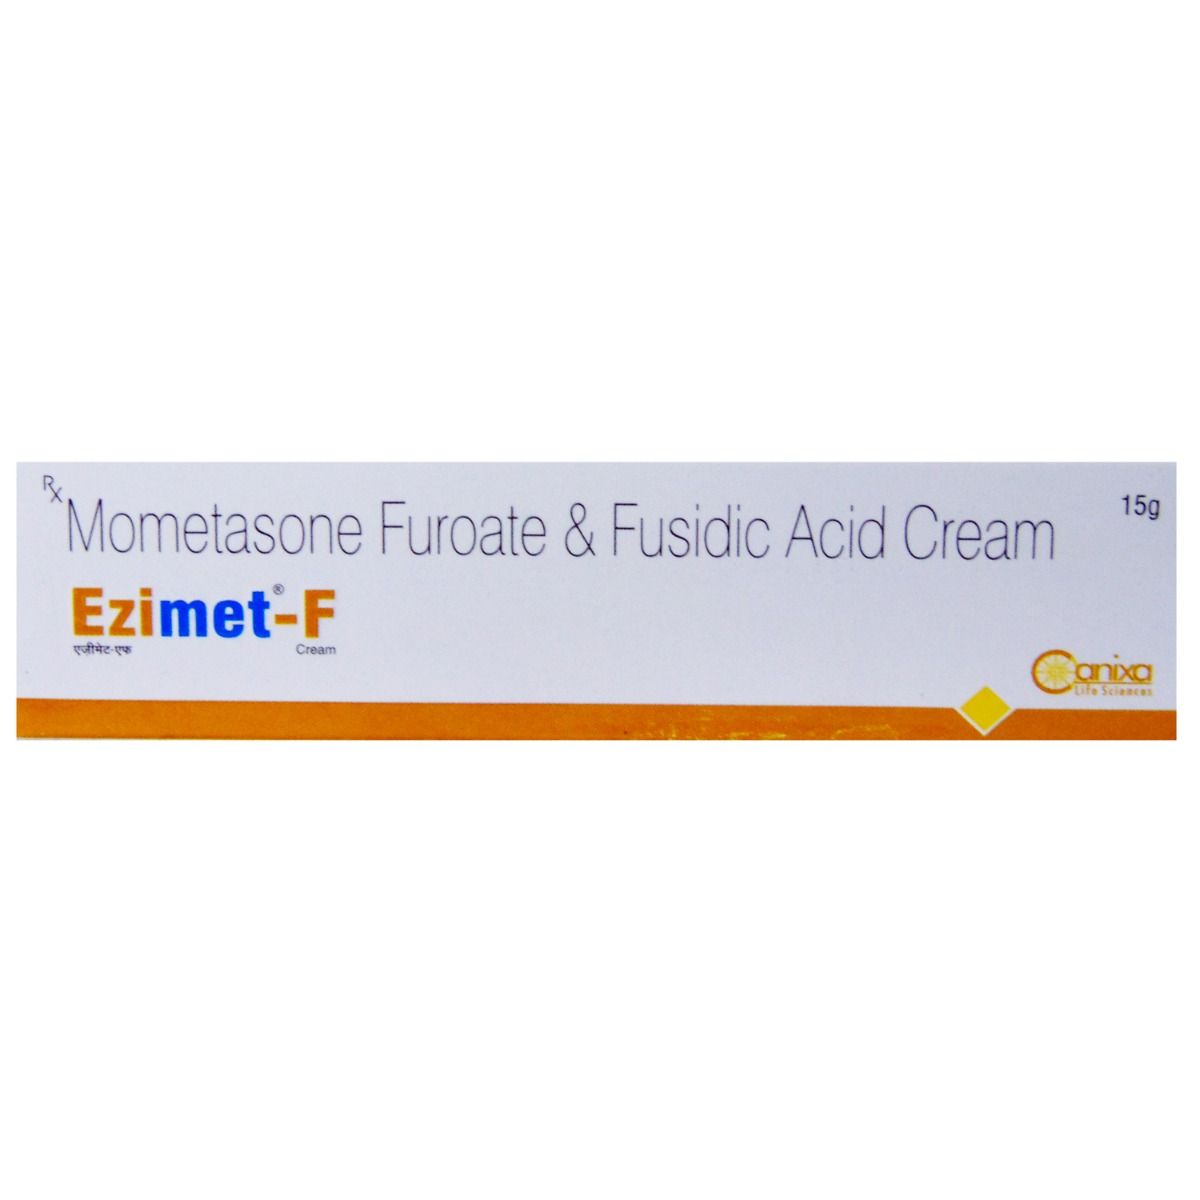 EZIMET F CREAM 15G Price, Uses, Side Effects, Composition - Apollo ...